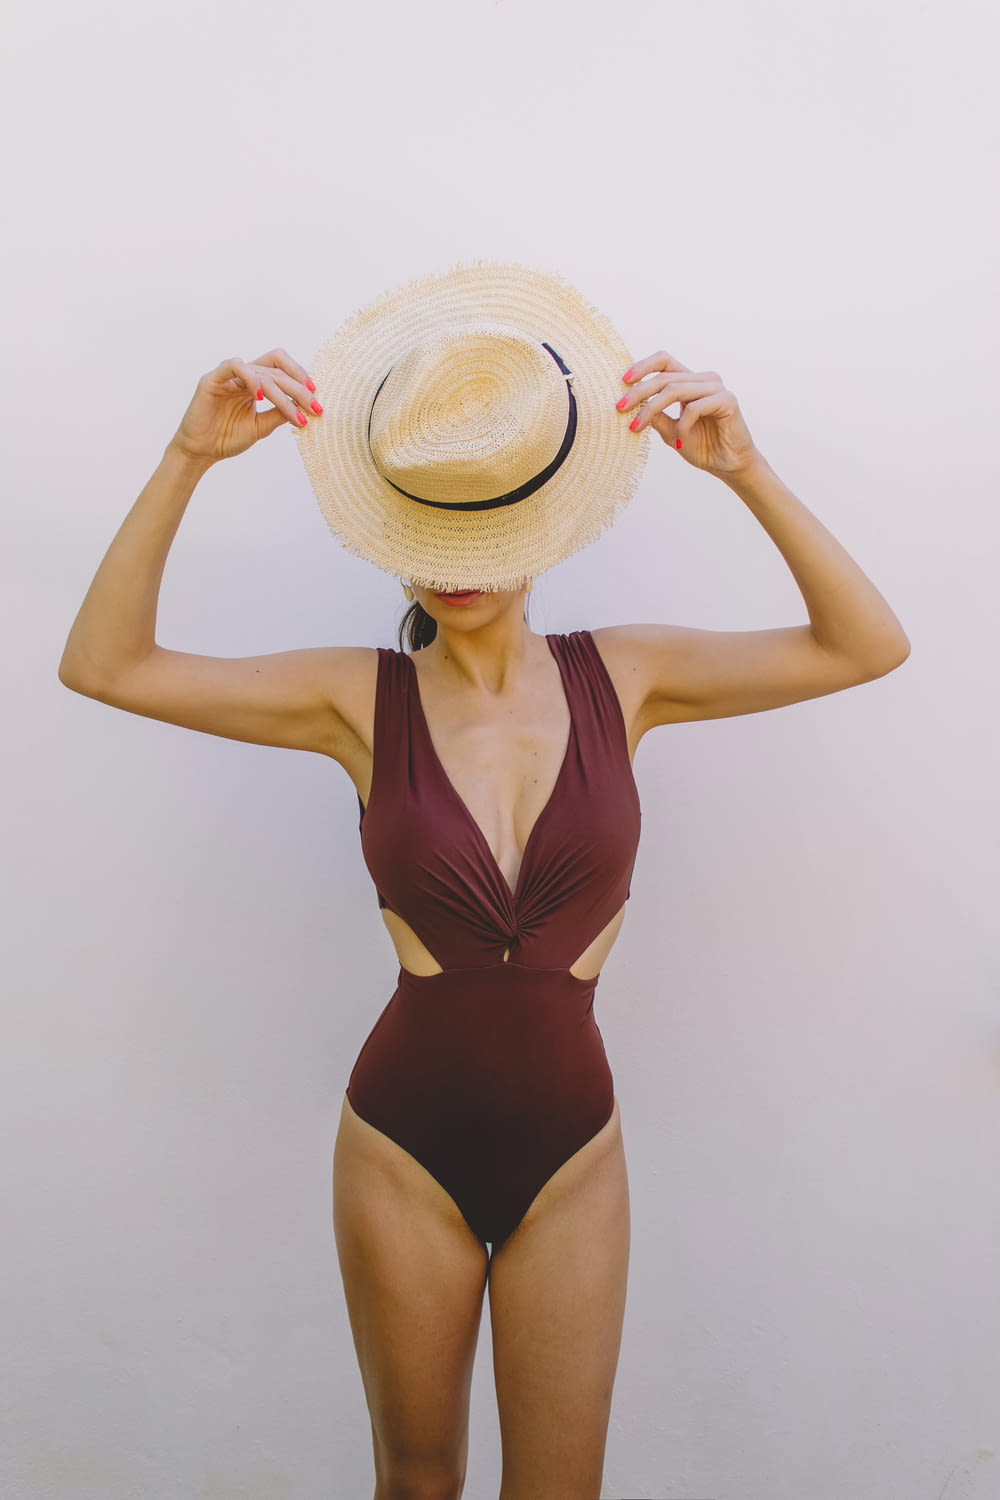 Femme en maillot de bain une pièce marron portant un chapeau de soleil marron